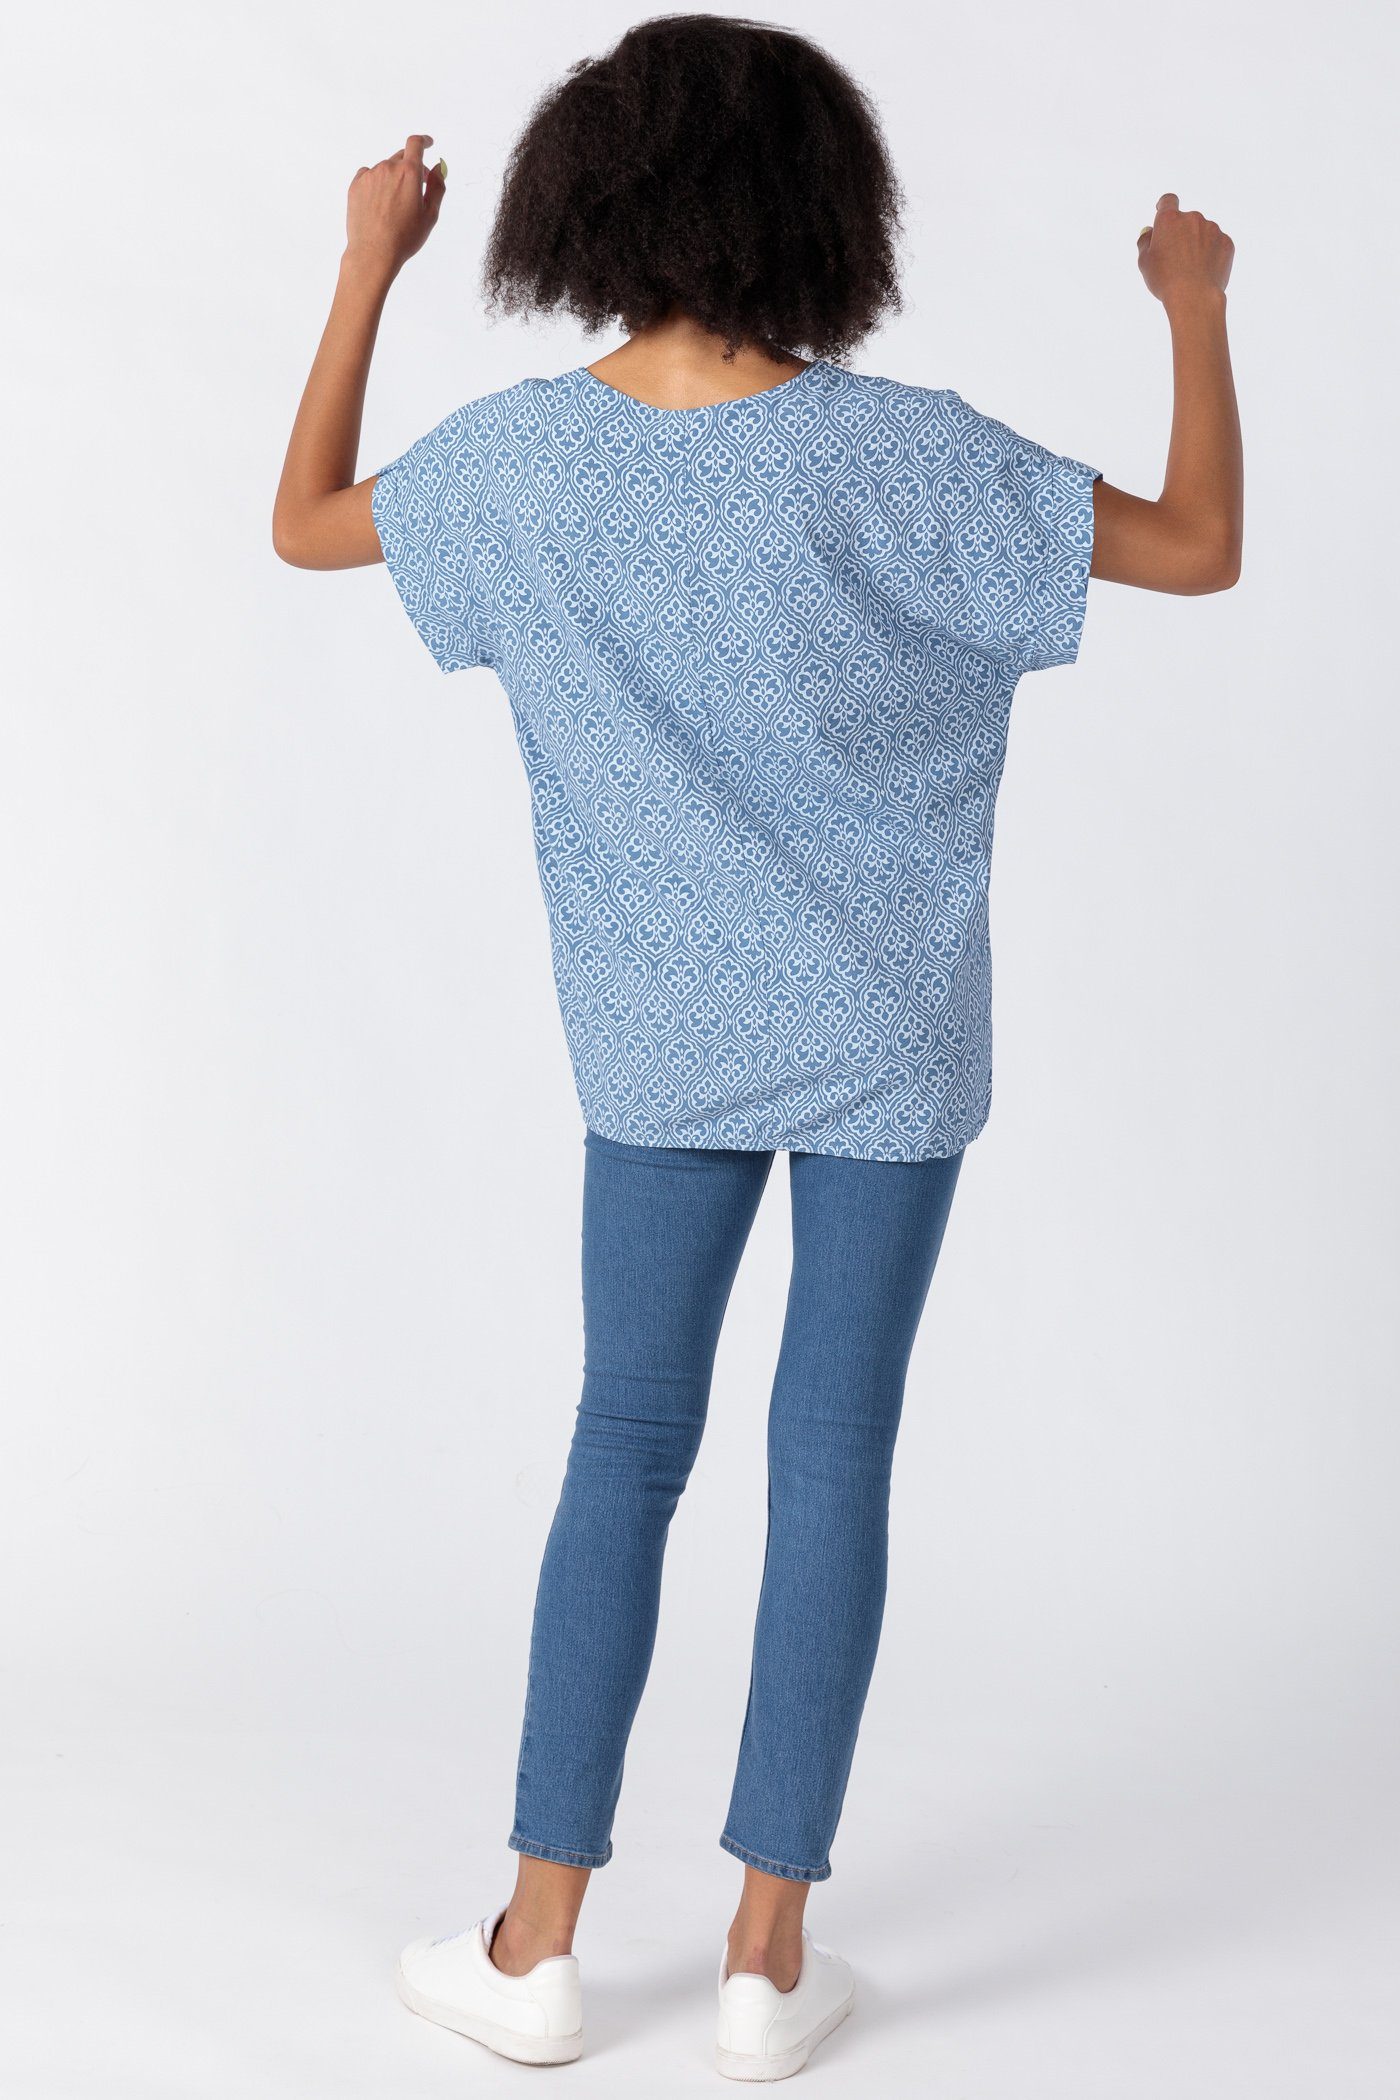 Viskose Damen jeansblau Shirtbluse PEKIVESSA aus Schulter überschnittener Kurzarm mit Schlupfbluse